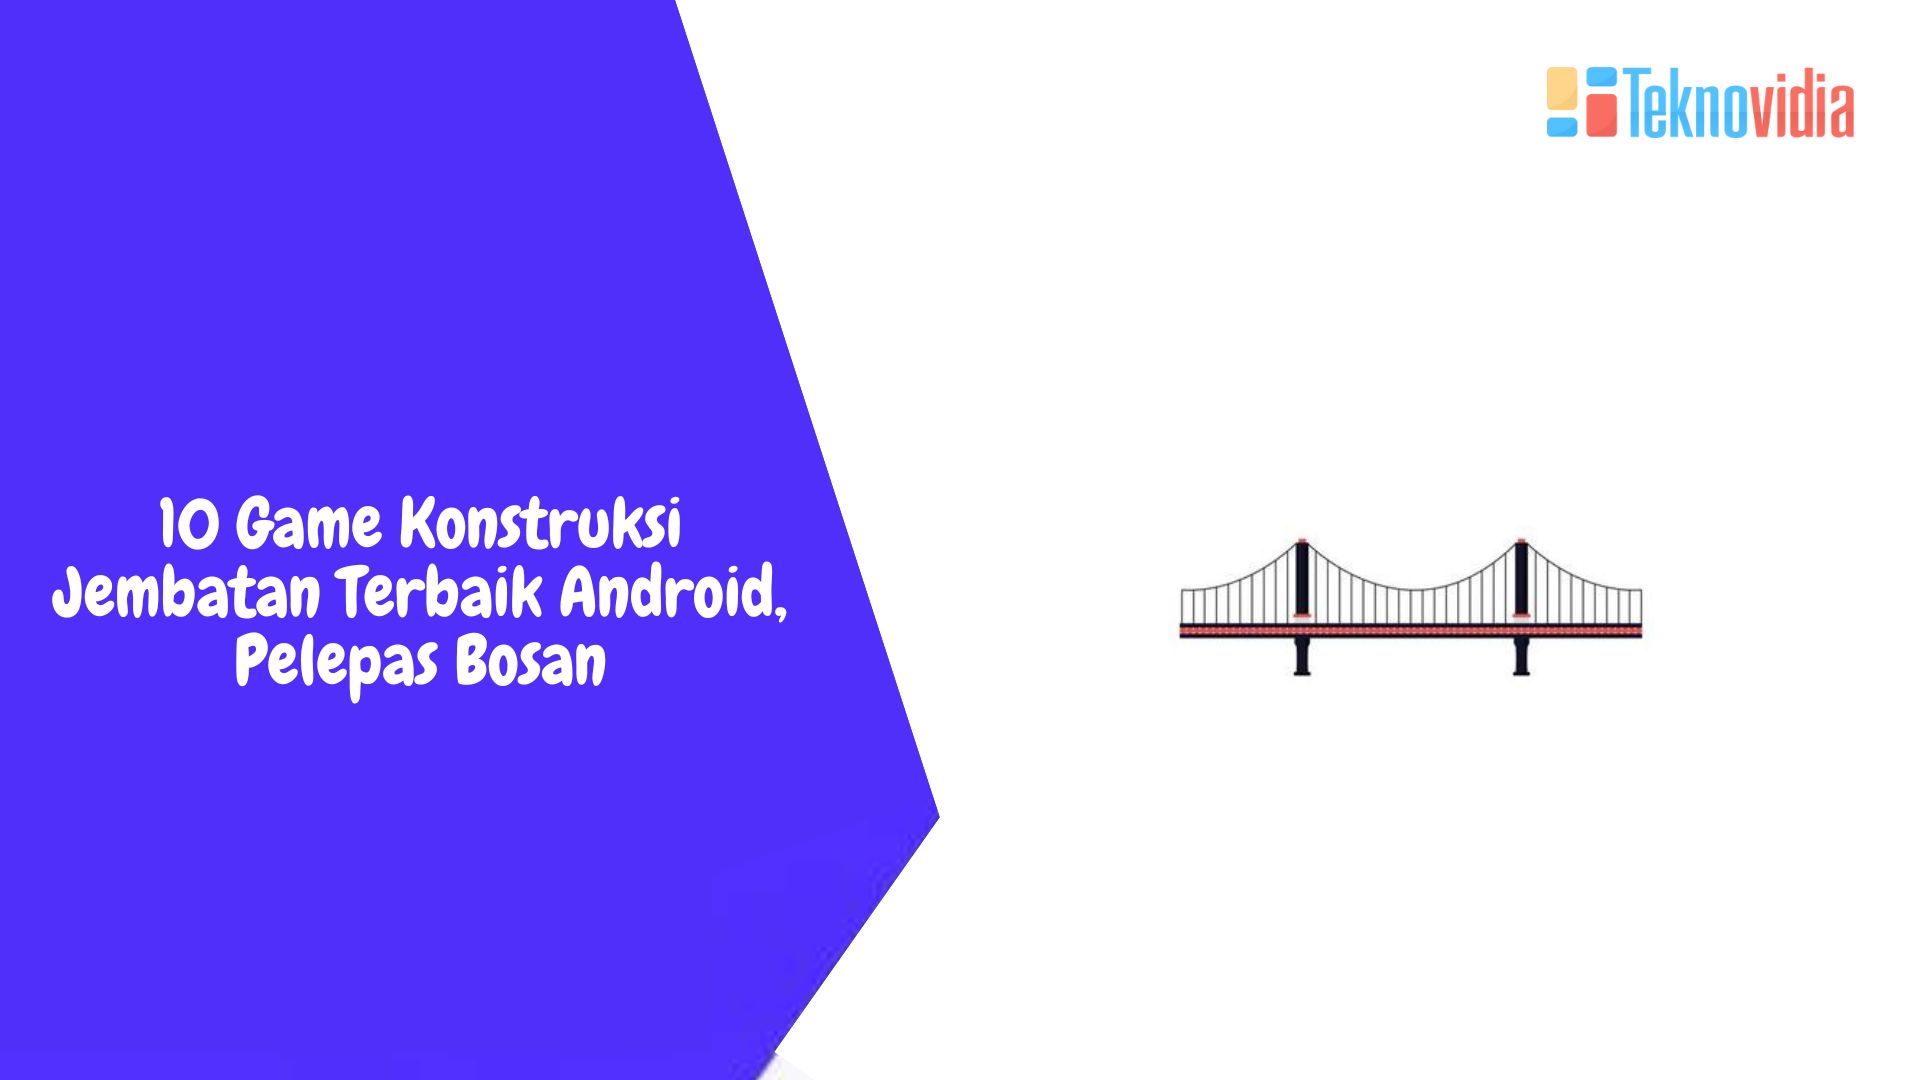 10 Game Konstruksi Jembatan Terbaik Android, Pelepas Bosan